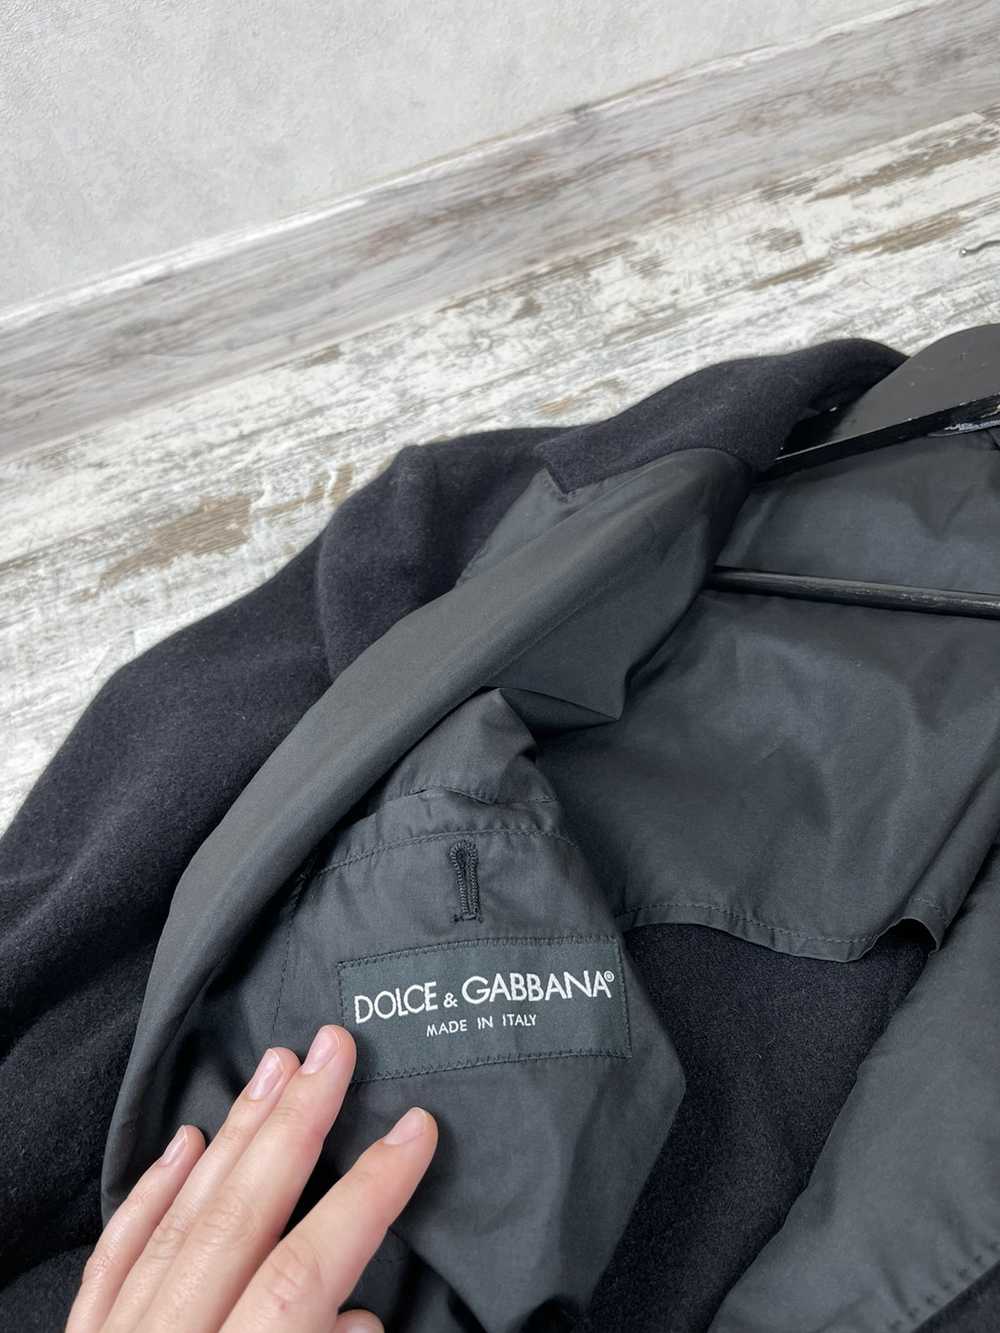 Dolce & Gabbana Dolce & Gabbana blazer jacket - image 5